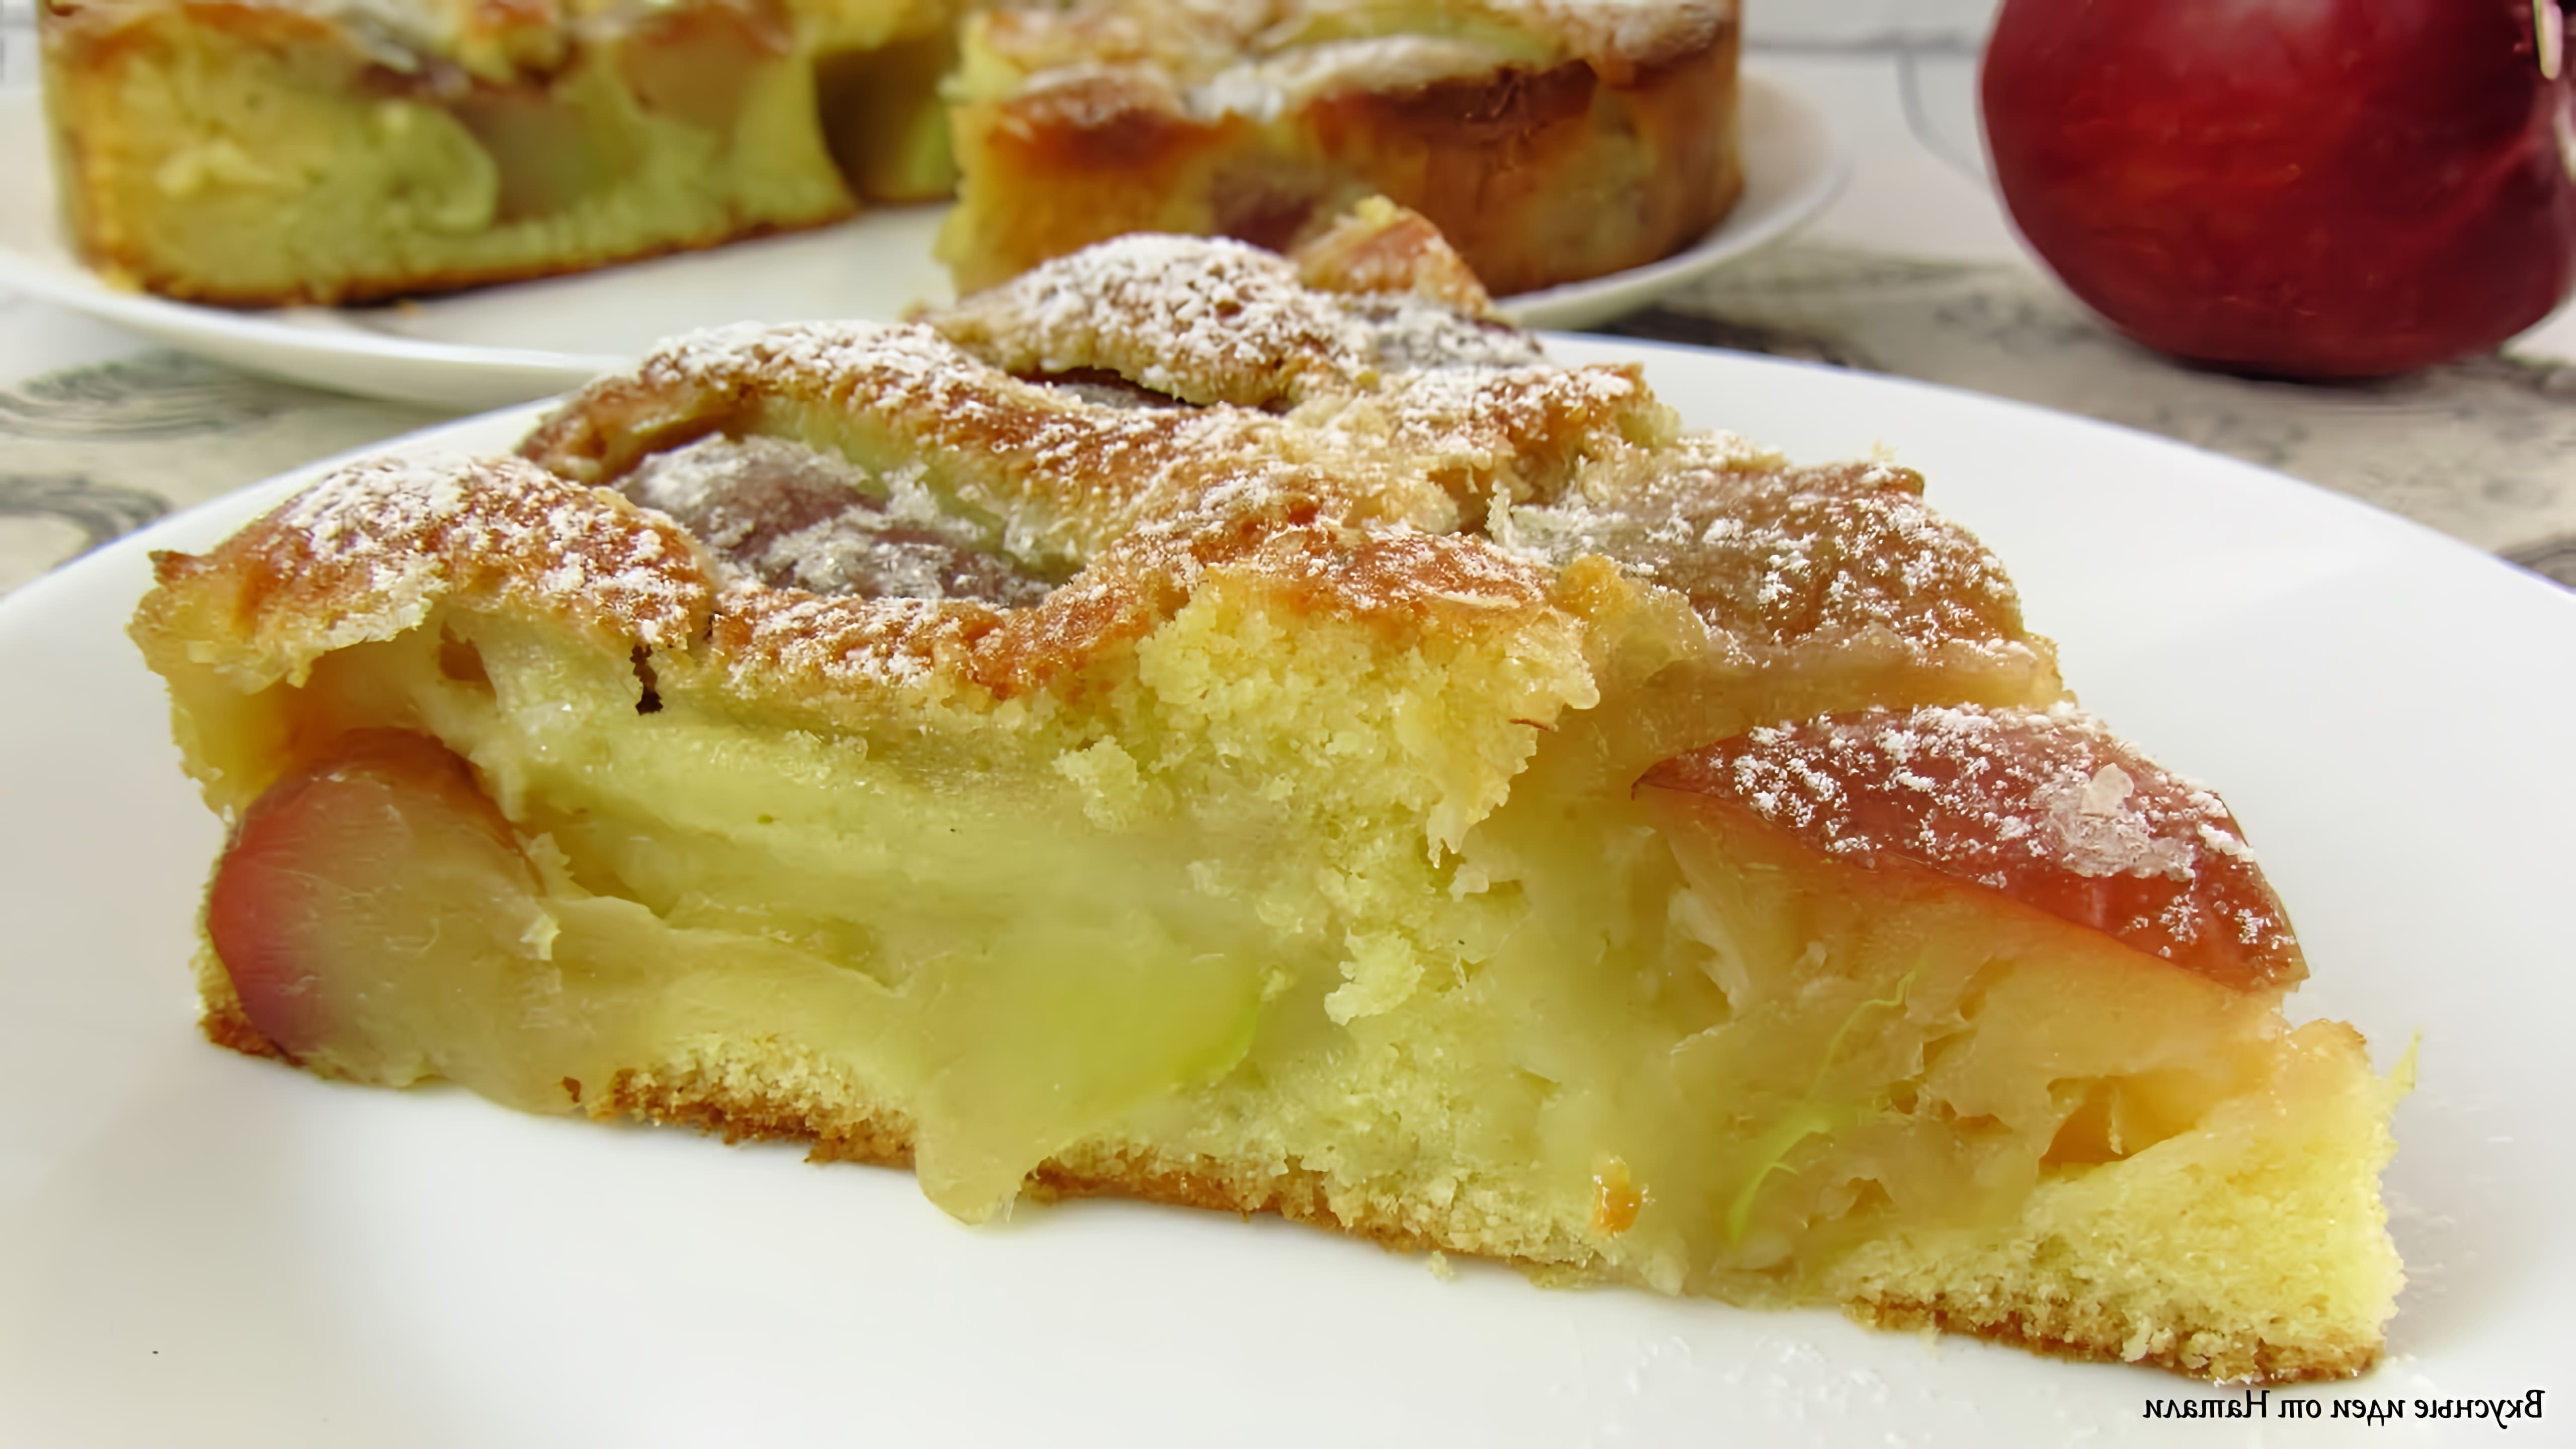 В этом видео демонстрируется рецепт итальянского яблочного пирога